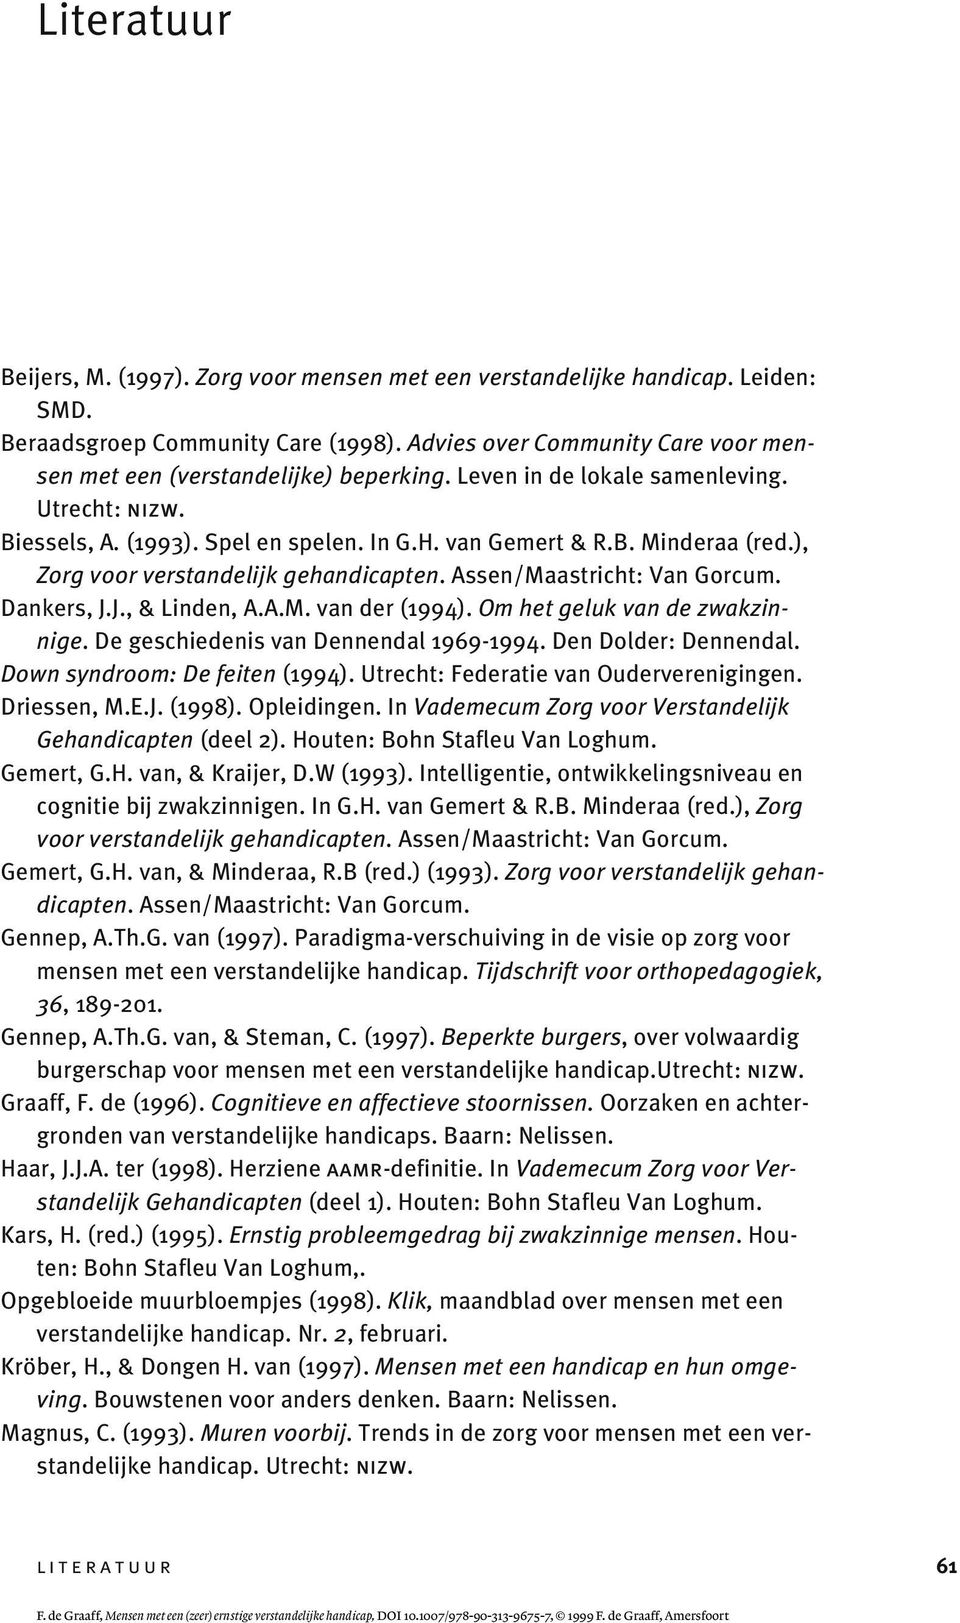 ), Zorg voor verstandelijk gehandicapten. Assen/Maastricht: Van Gorcum. Dankers, J.J., & Linden, A.A.M. van der (1994). Om het geluk van de zwakzinnige. De geschiedenis van Dennendal 1969-1994.